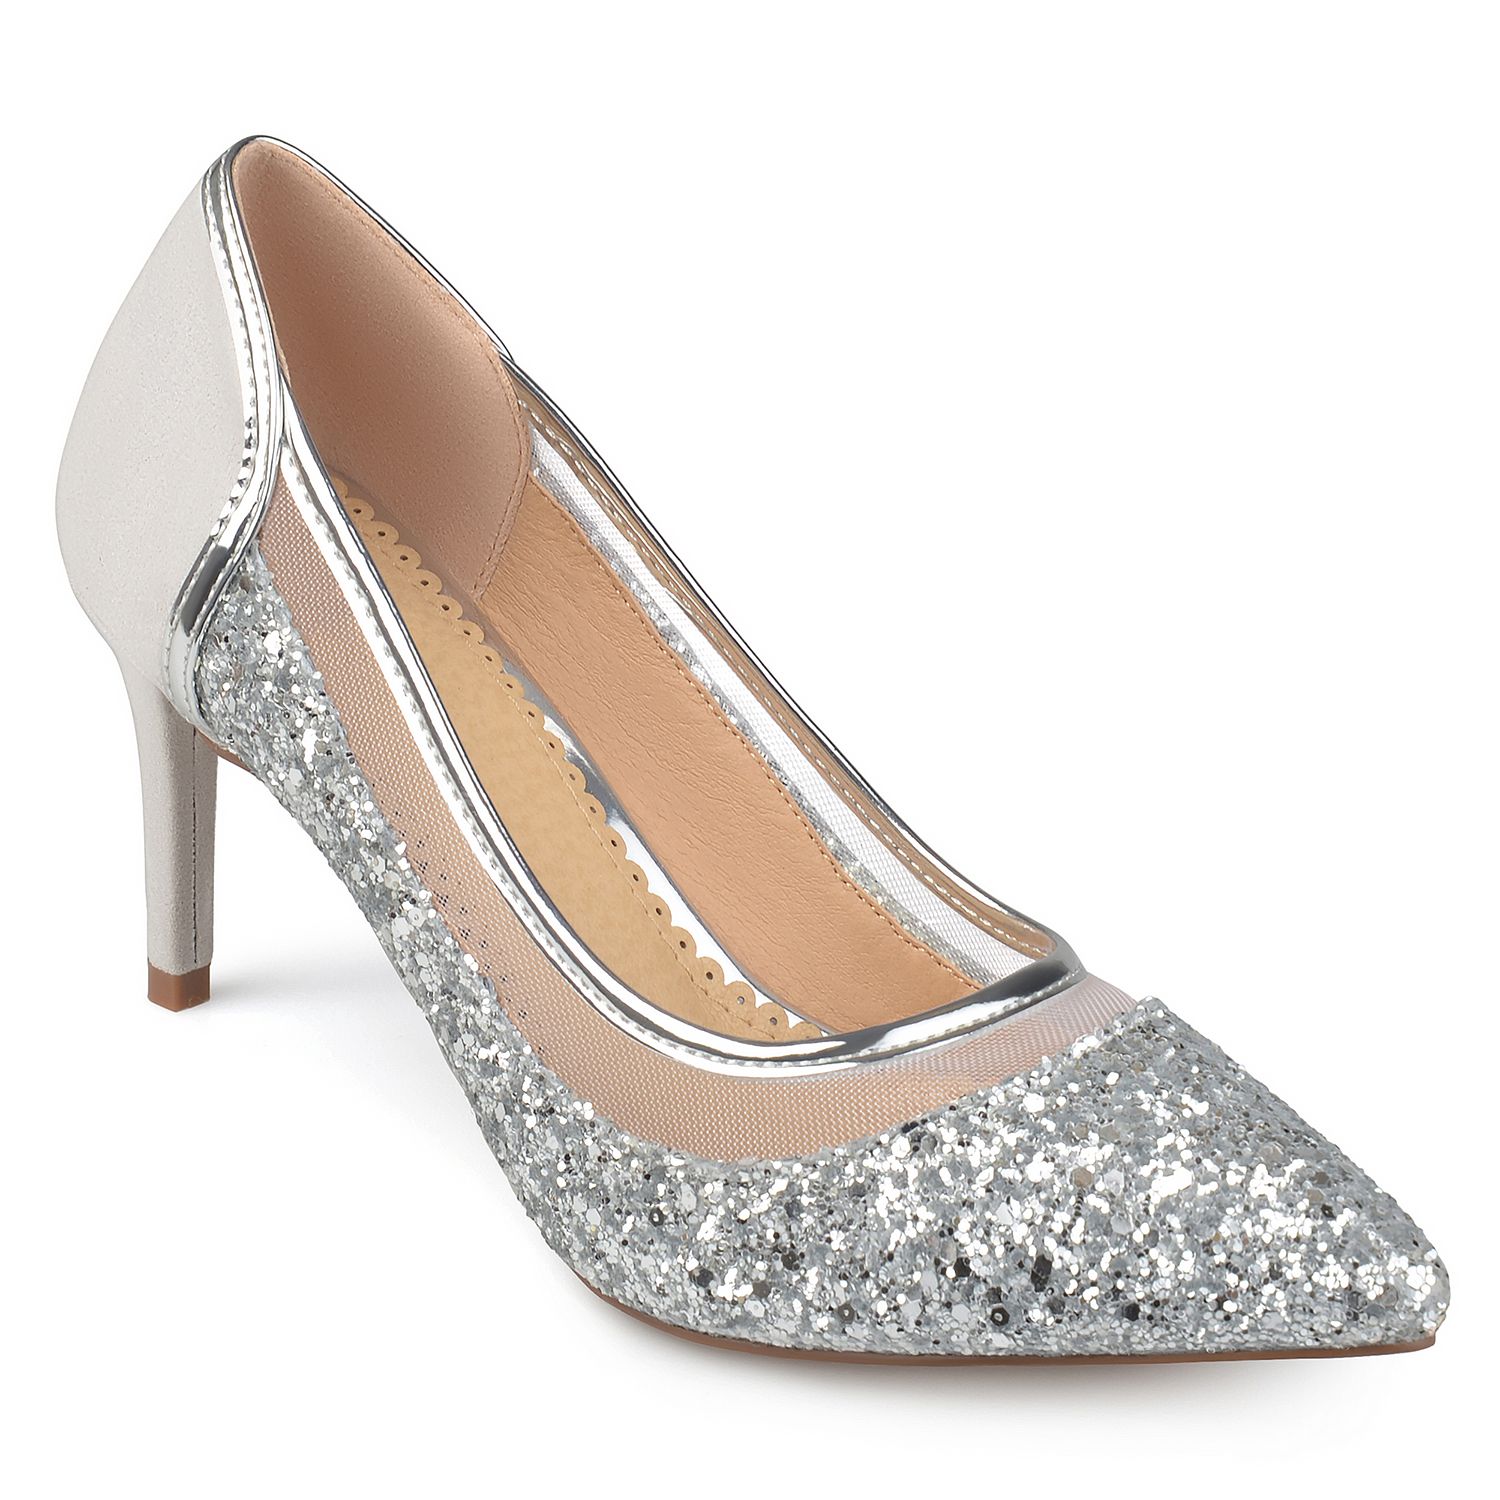 Grey \u0026 Silver Heels For Women | Kohl's